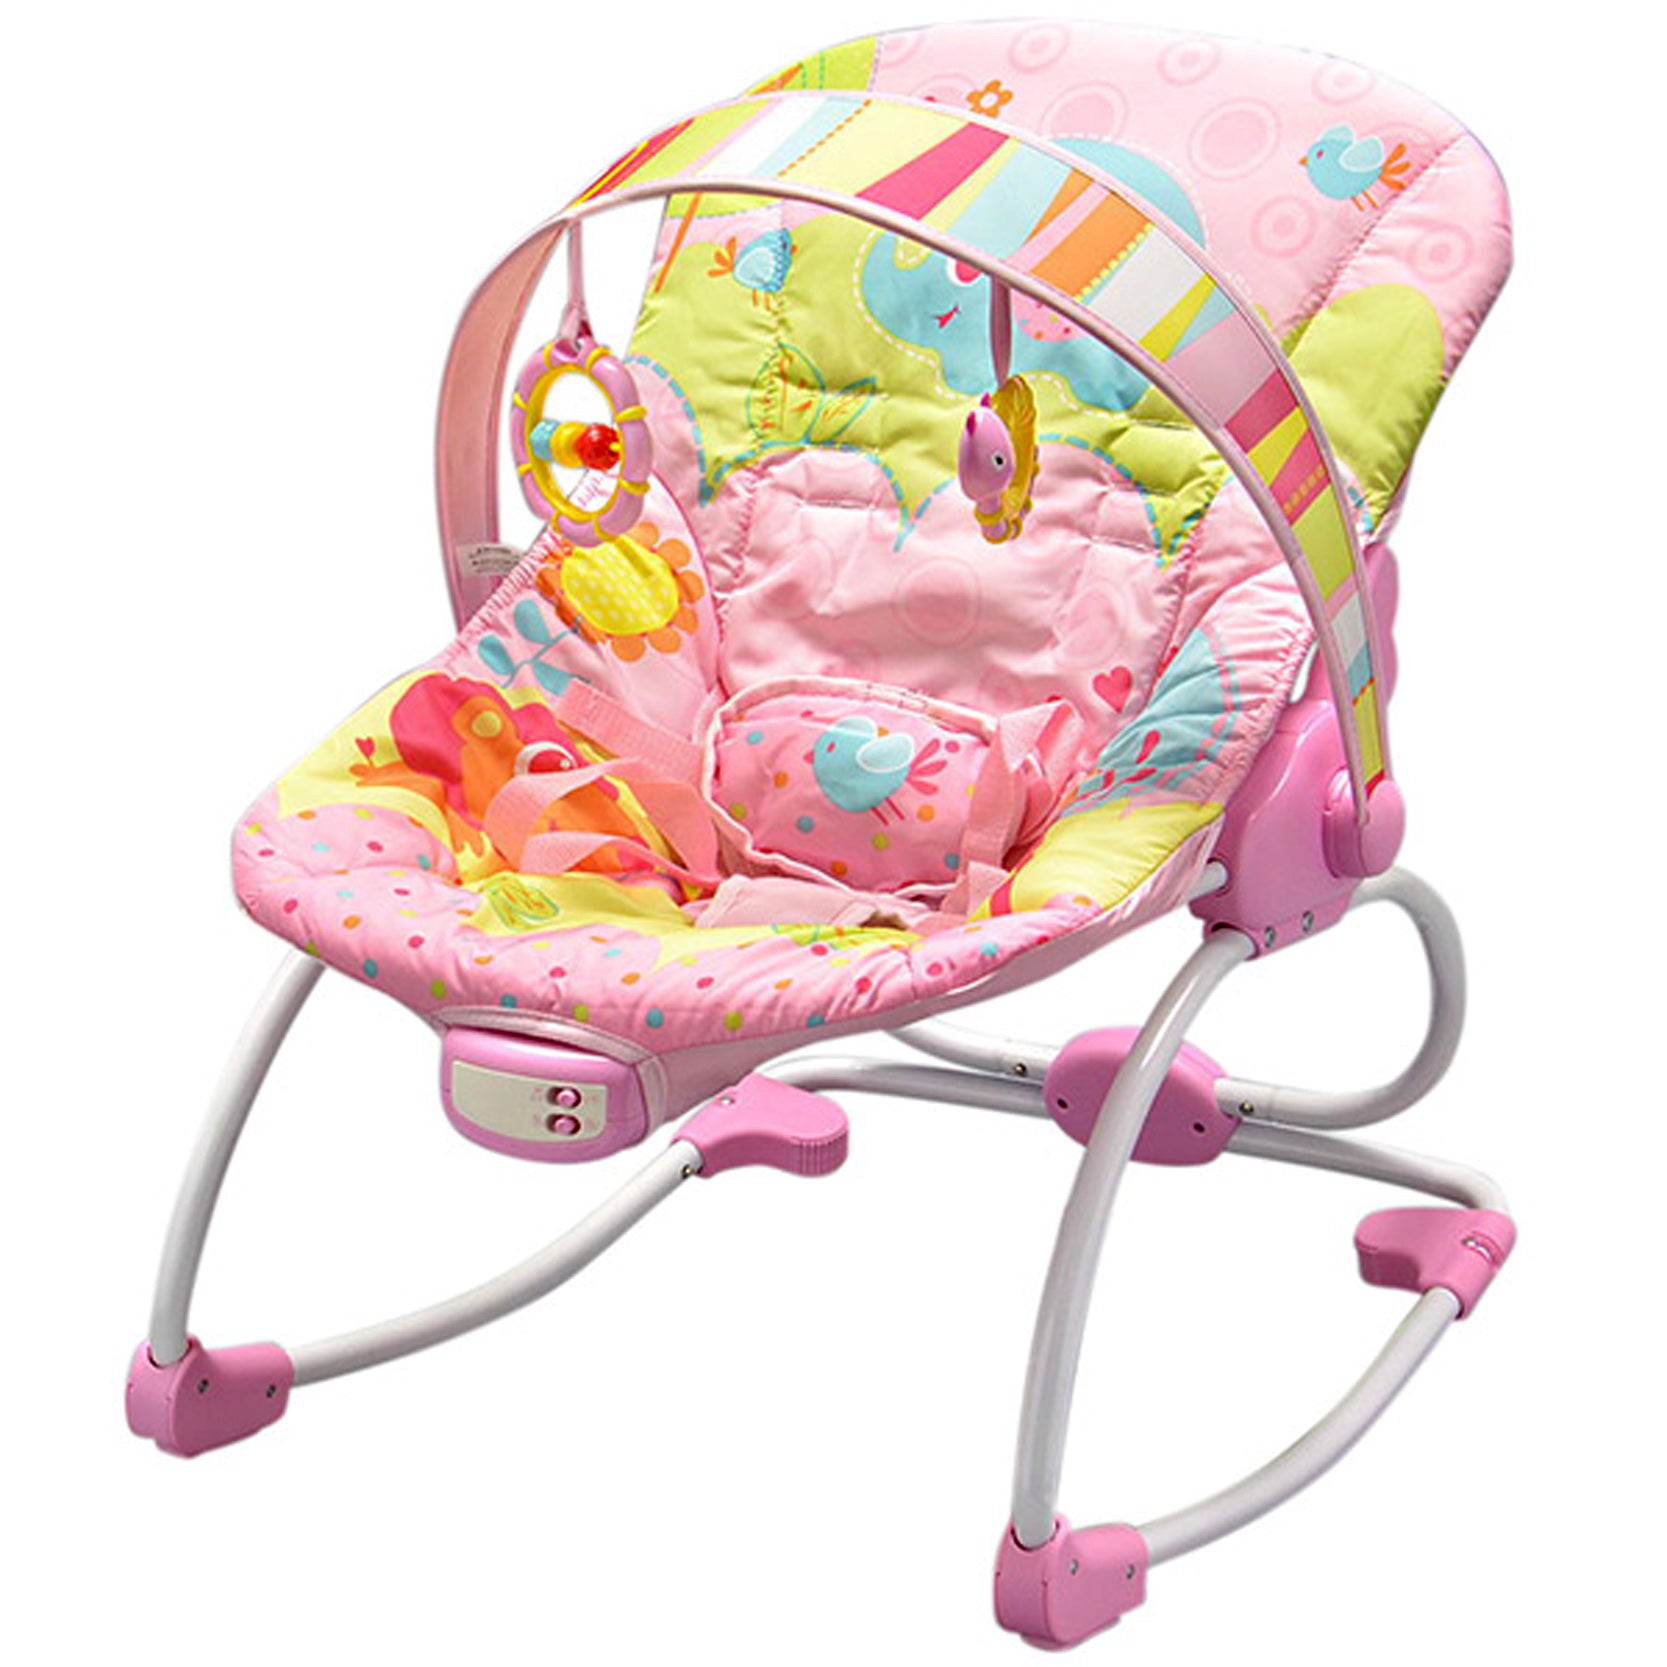 Newborn to Toddler Rocker - Pink - Mastela